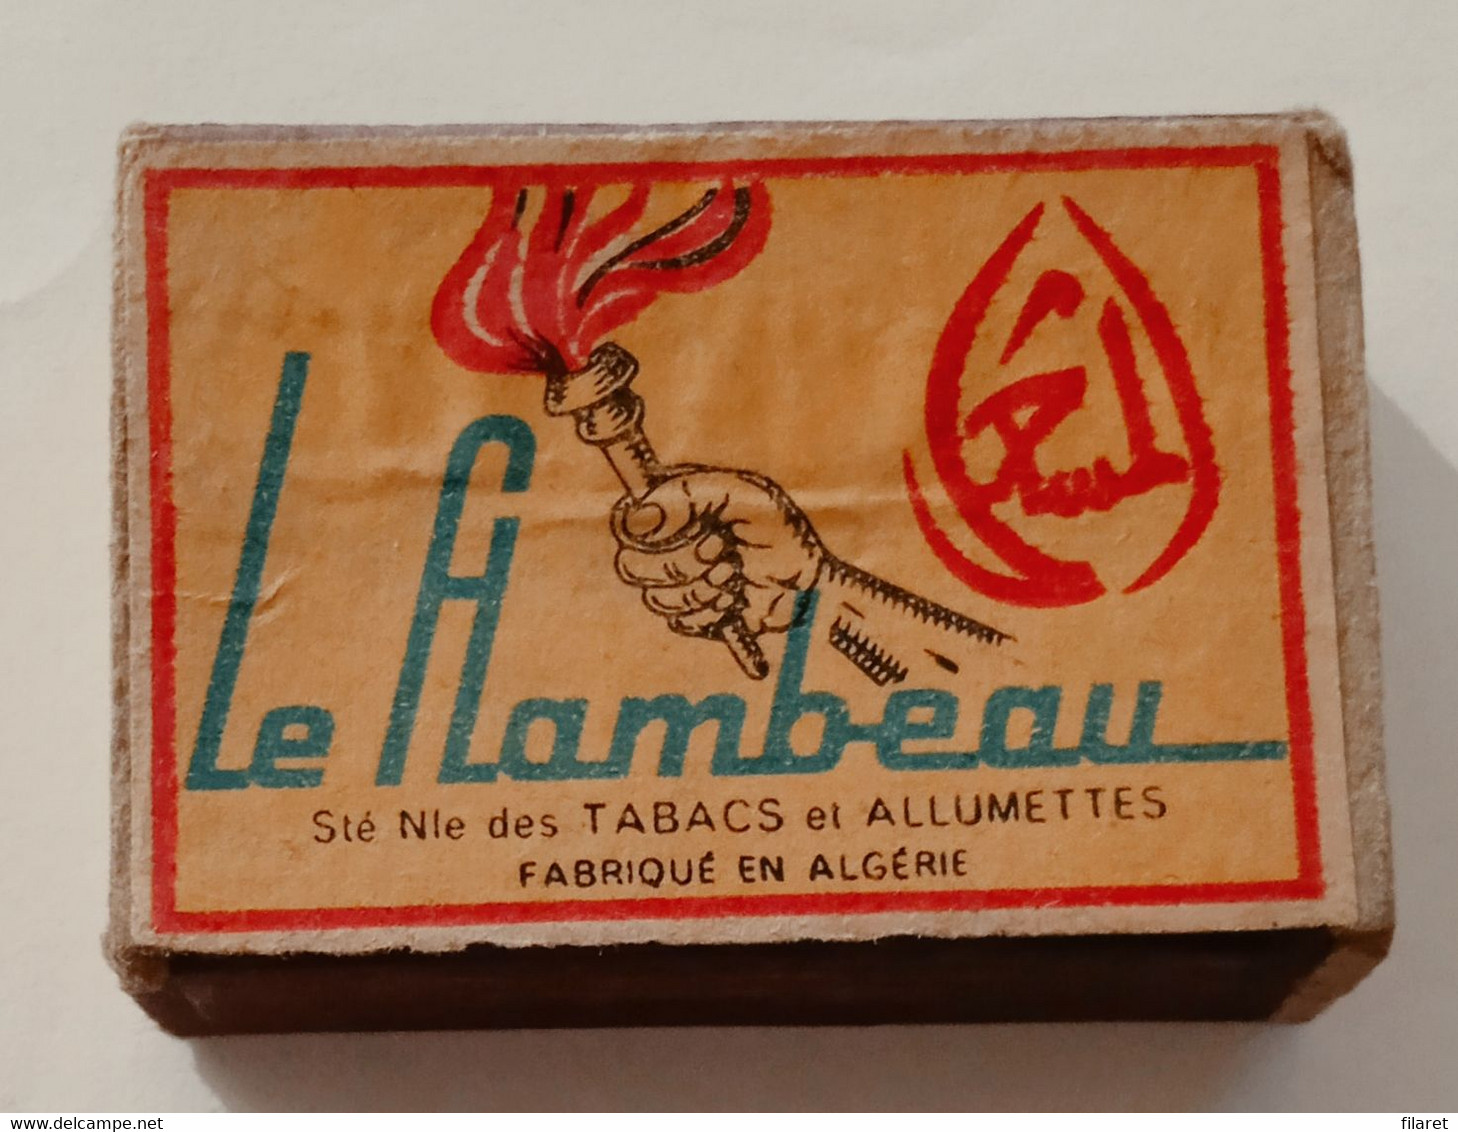 LE FLAMBEAU,ALGERIE, OLD MATCHBOXE - Boites D'allumettes